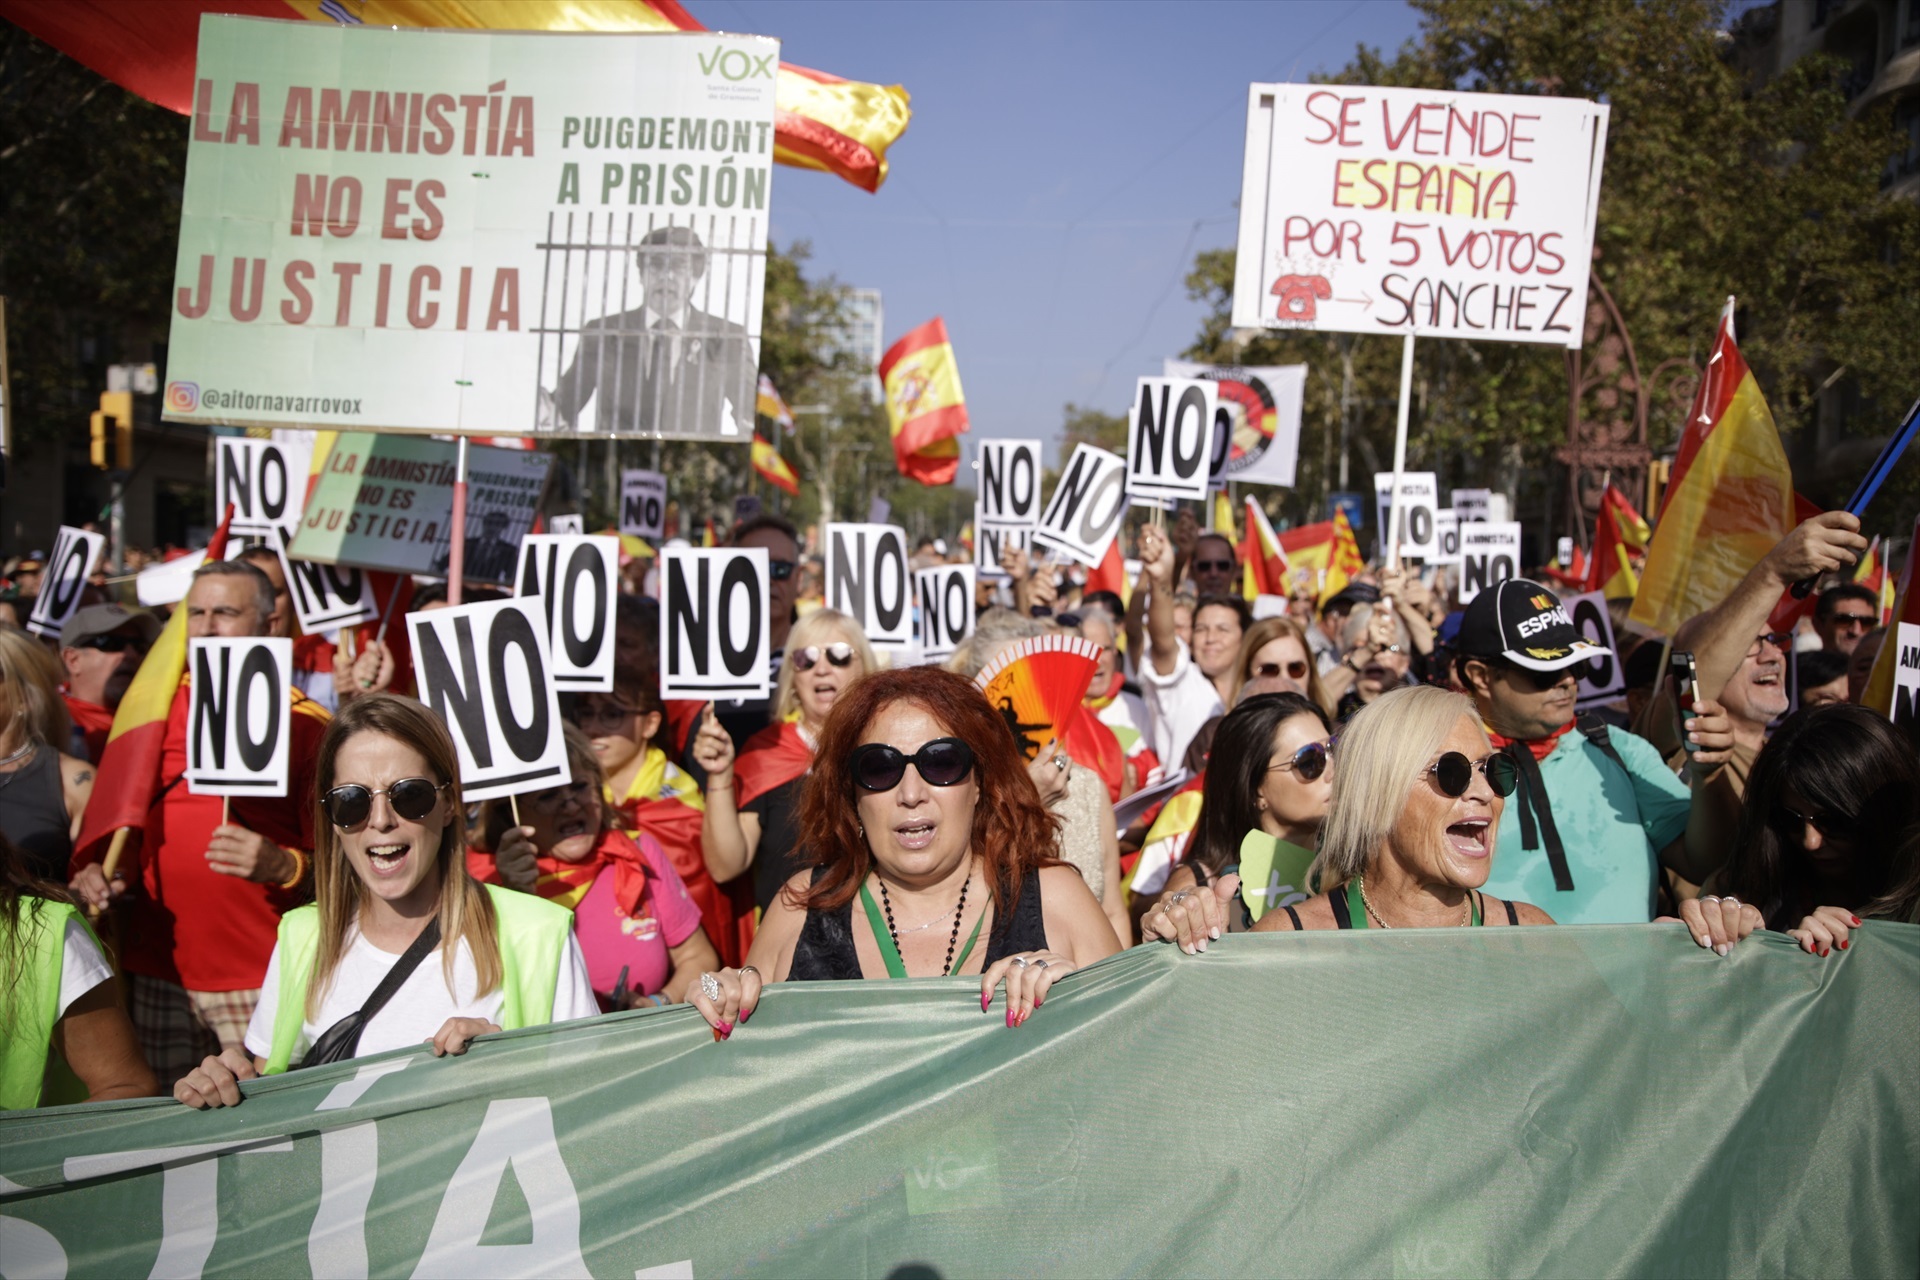 Varias personas protestan por la amnistía en Barcelona. // Europa press